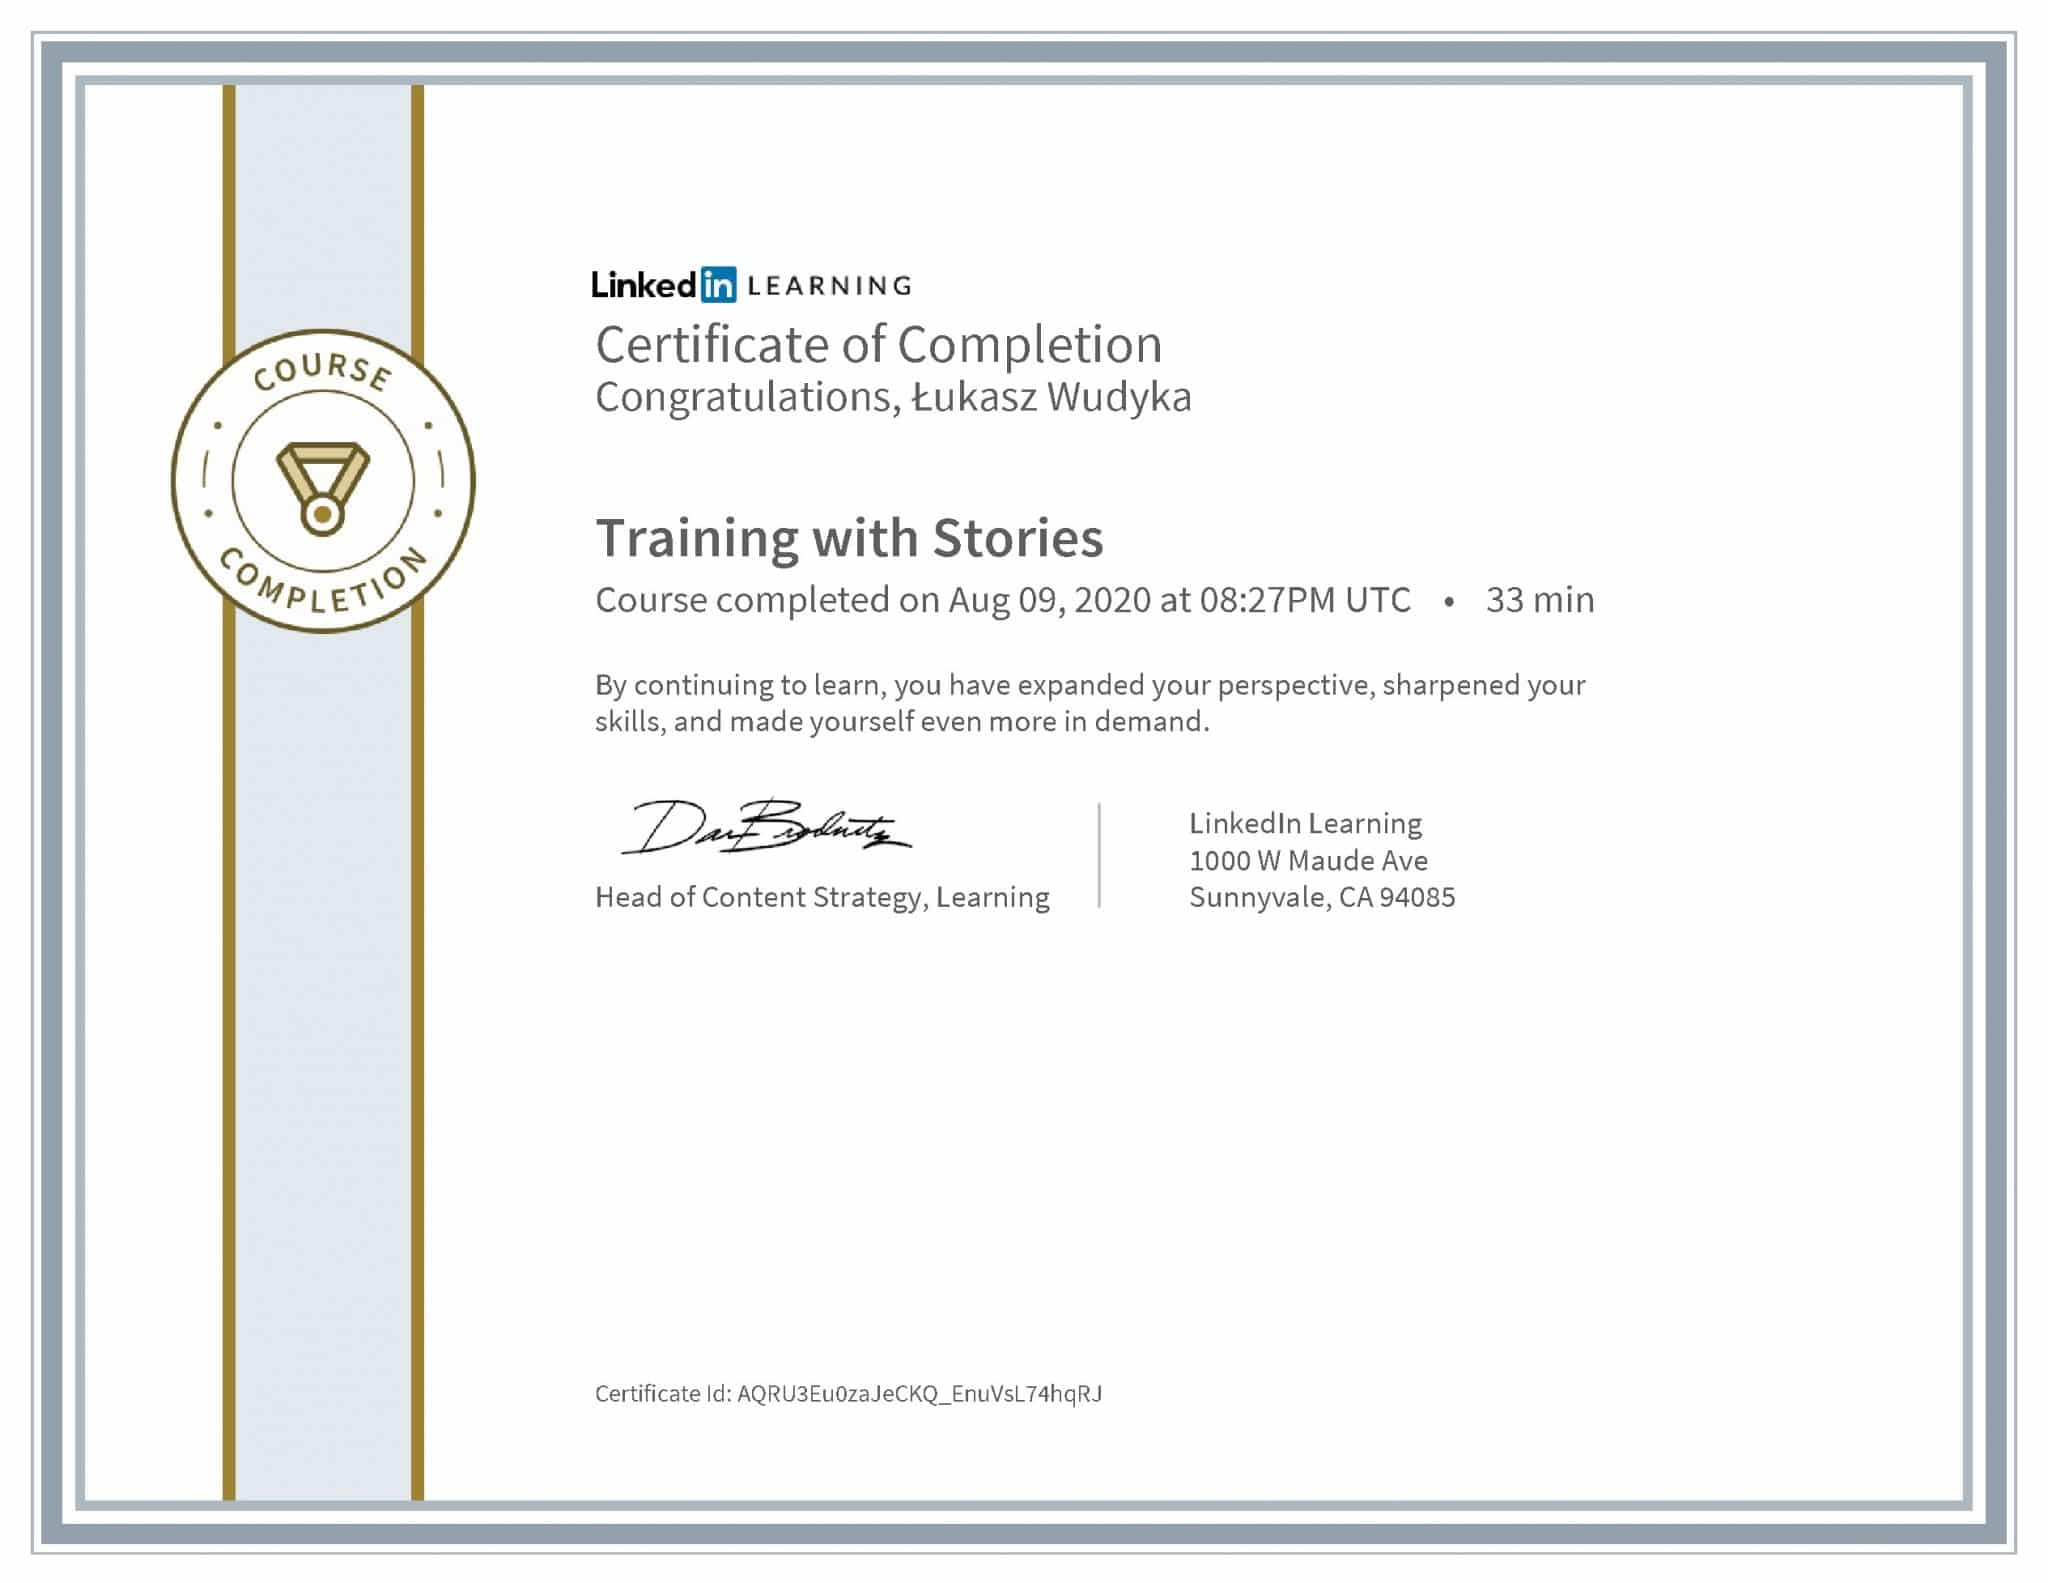 Łukasz Wudyka certyfikat LinkedIn Training with Stories